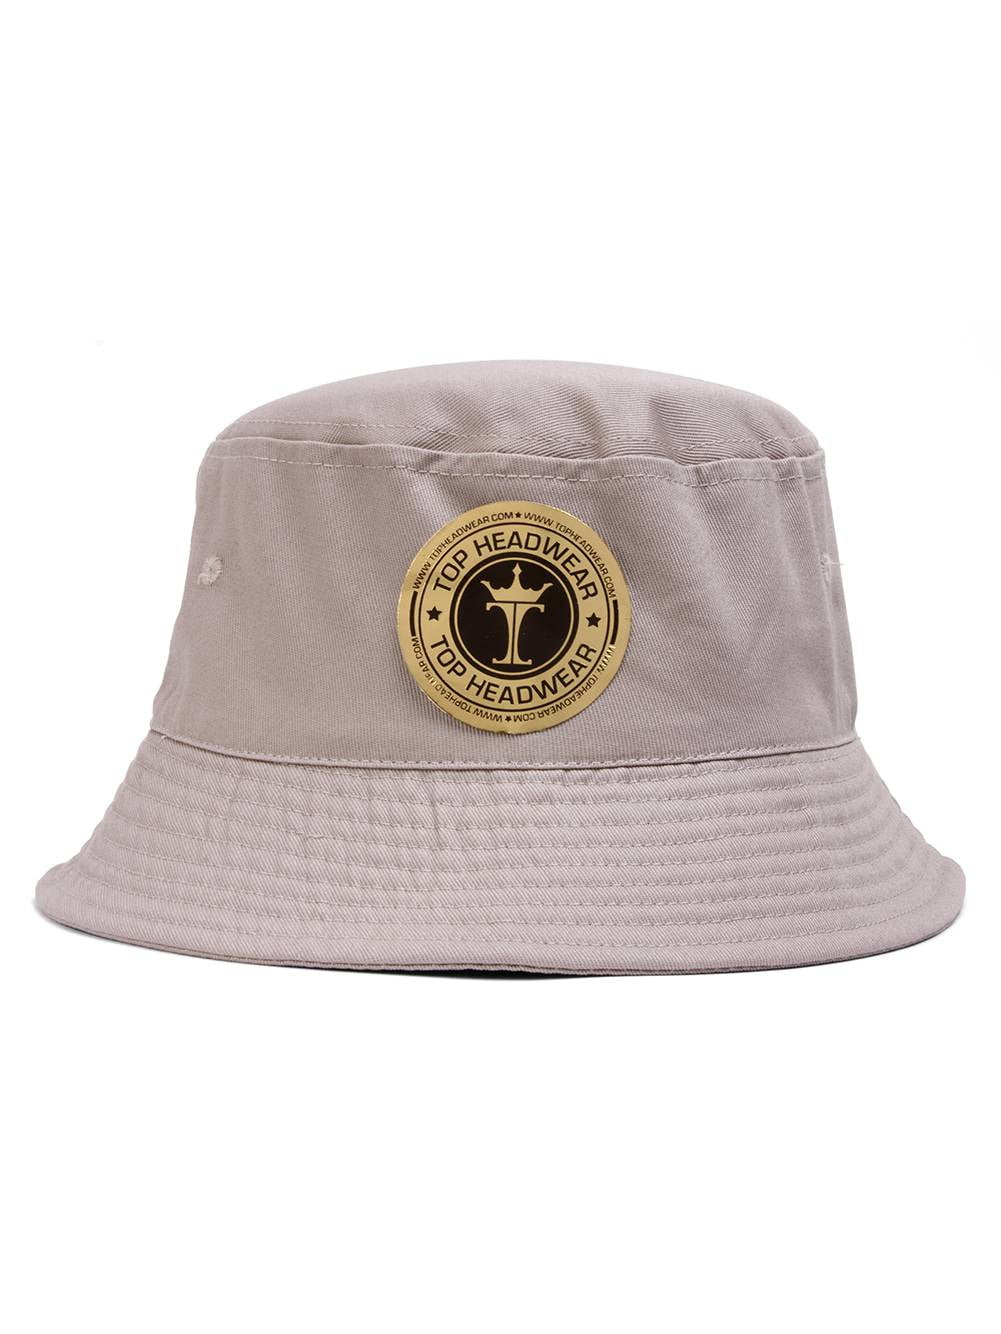 Bucket Hat For Men Women - Cotton Packable Fishing Cap, Brown S/M 